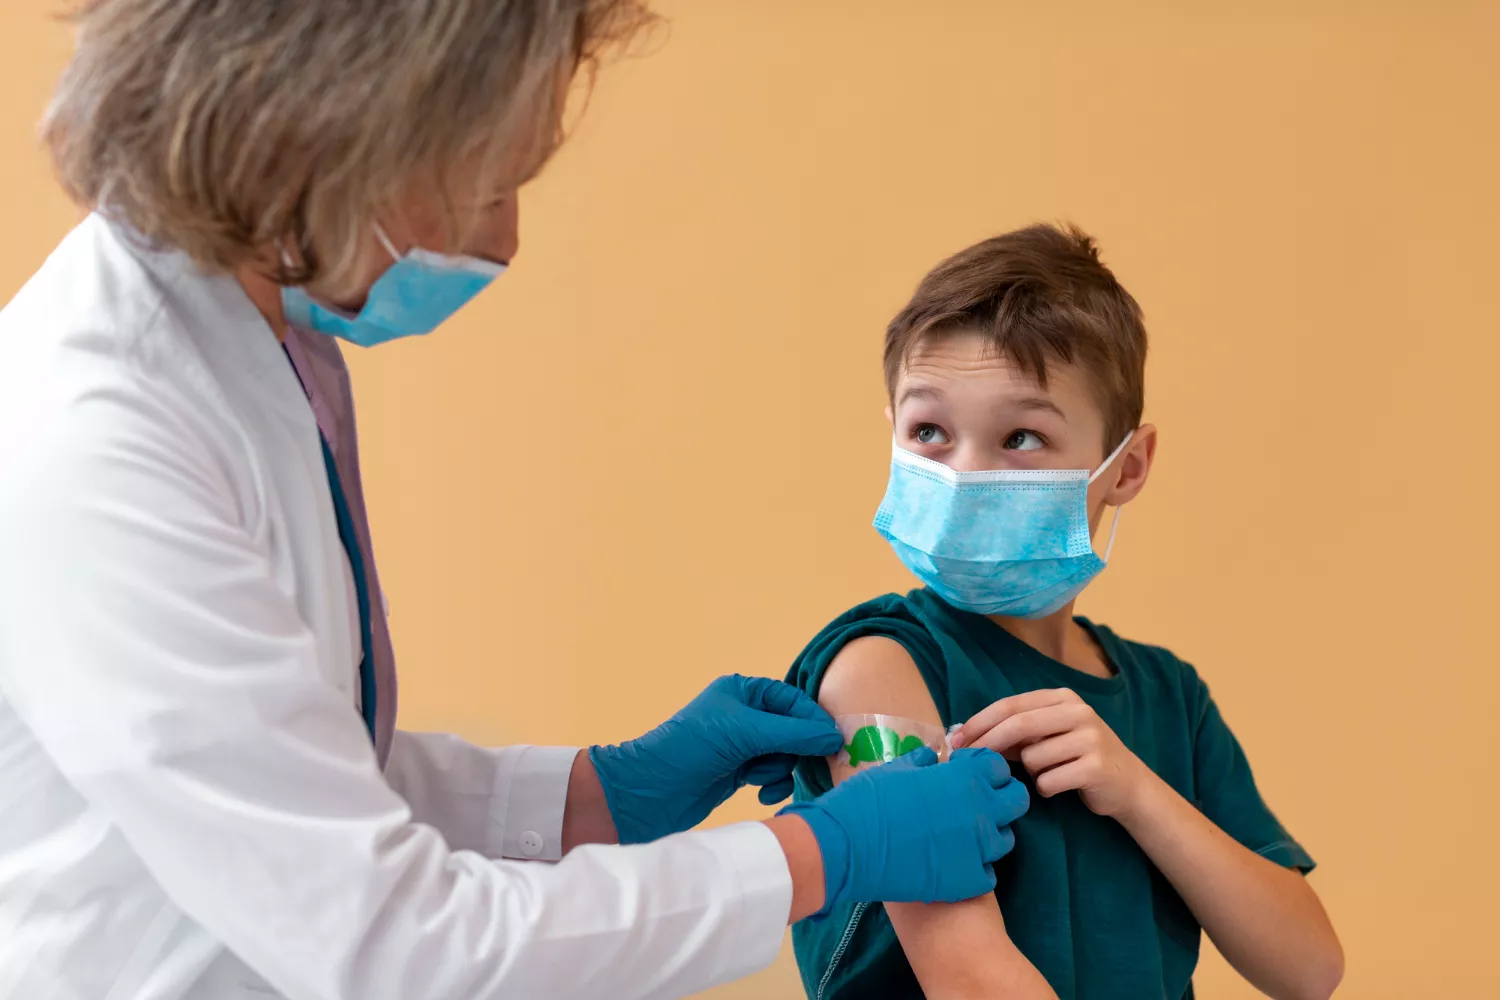 Основные методы профилактики ротавирусной инфекции – вакцинация и соблюдение правил личной гигиены